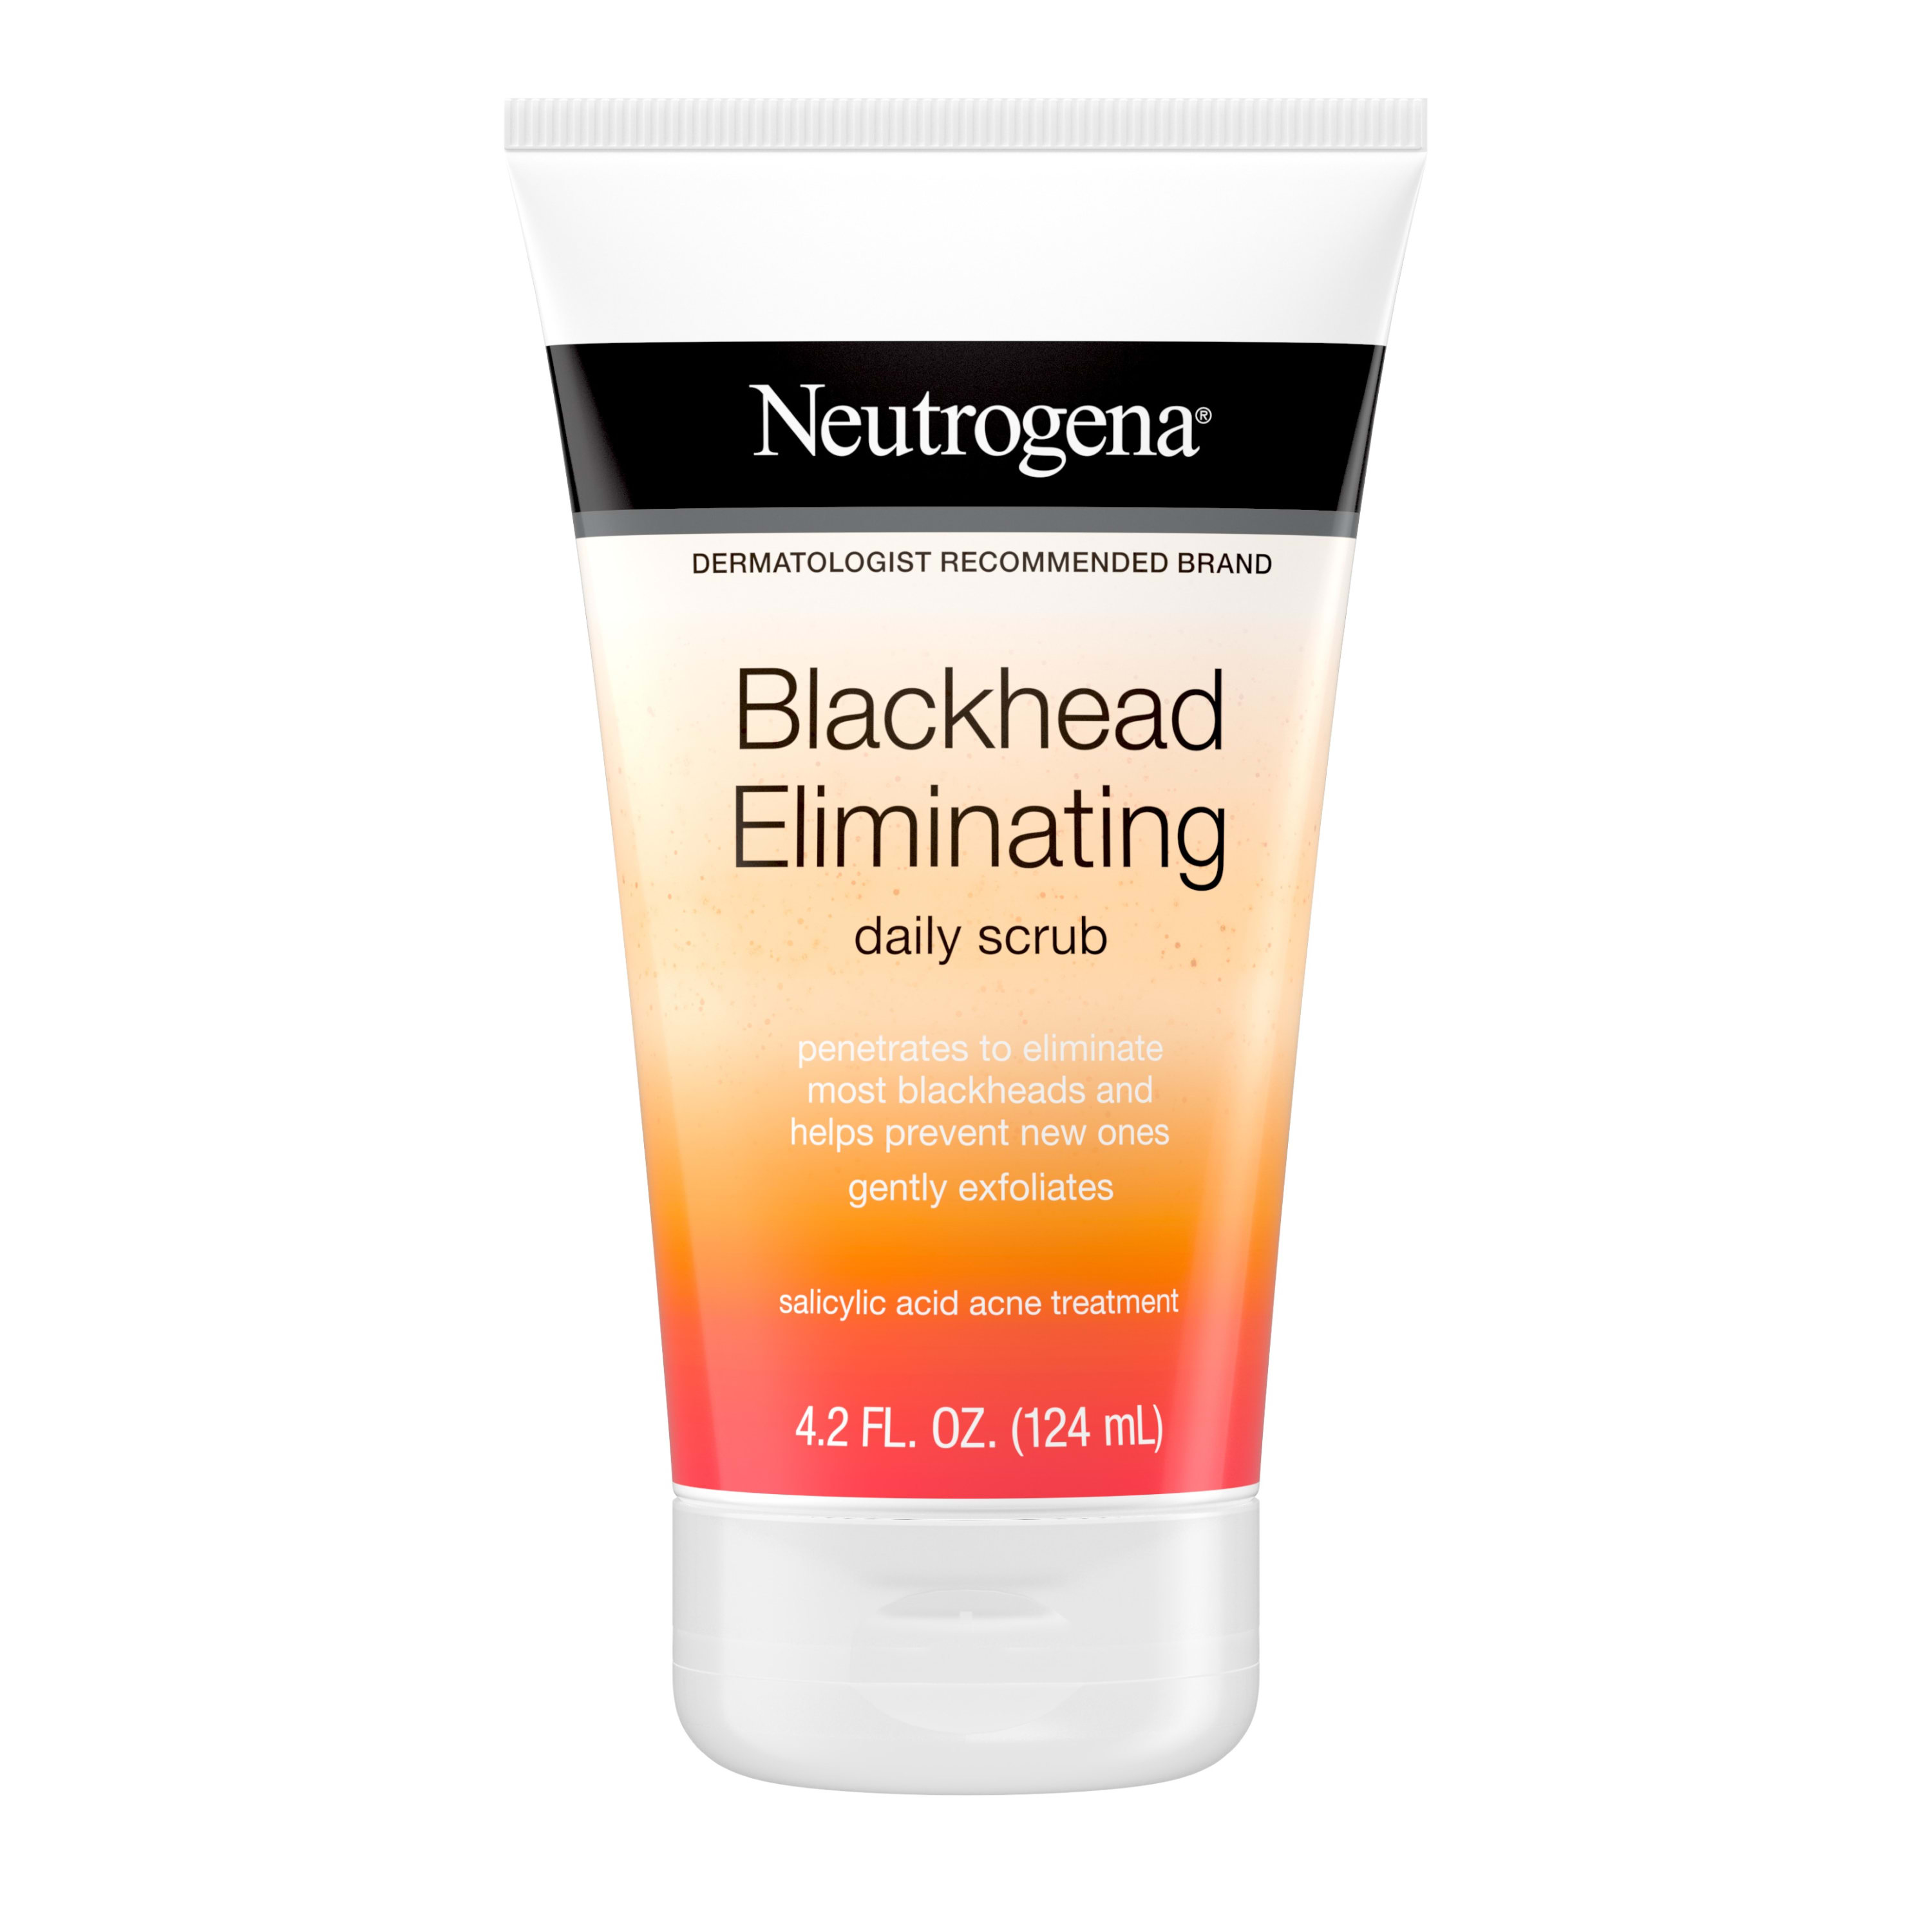 Neutrogena Exfoliating Blackhead Salicylic Acid Face Scrub, 4.2 oz - image 1 of 8